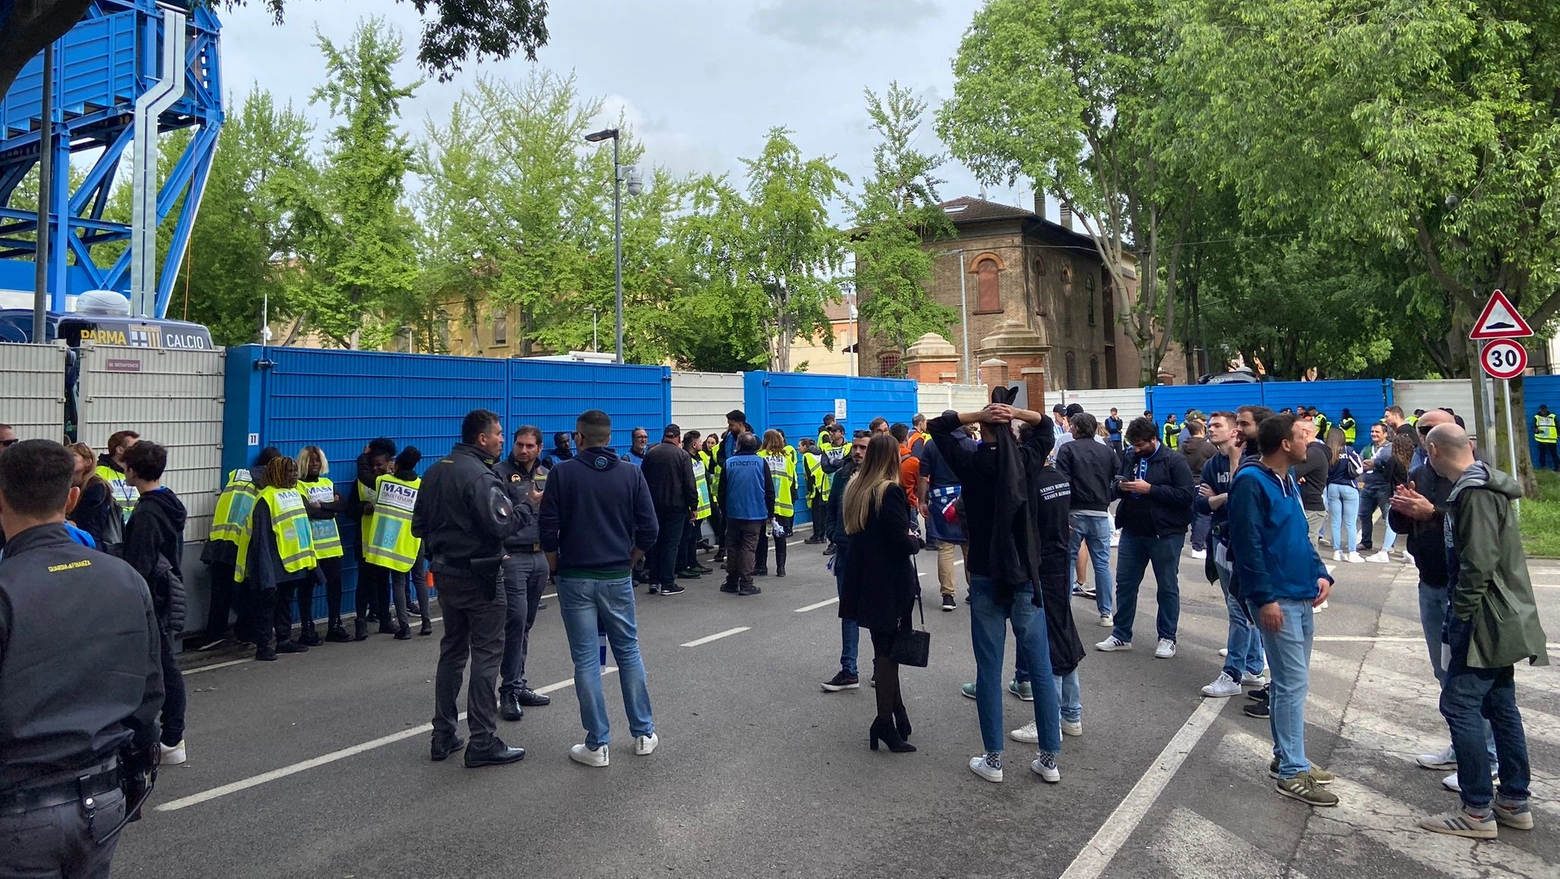 Ultras del Parma assaltano i pullman dei tifosi del Venezia: quattro fermi